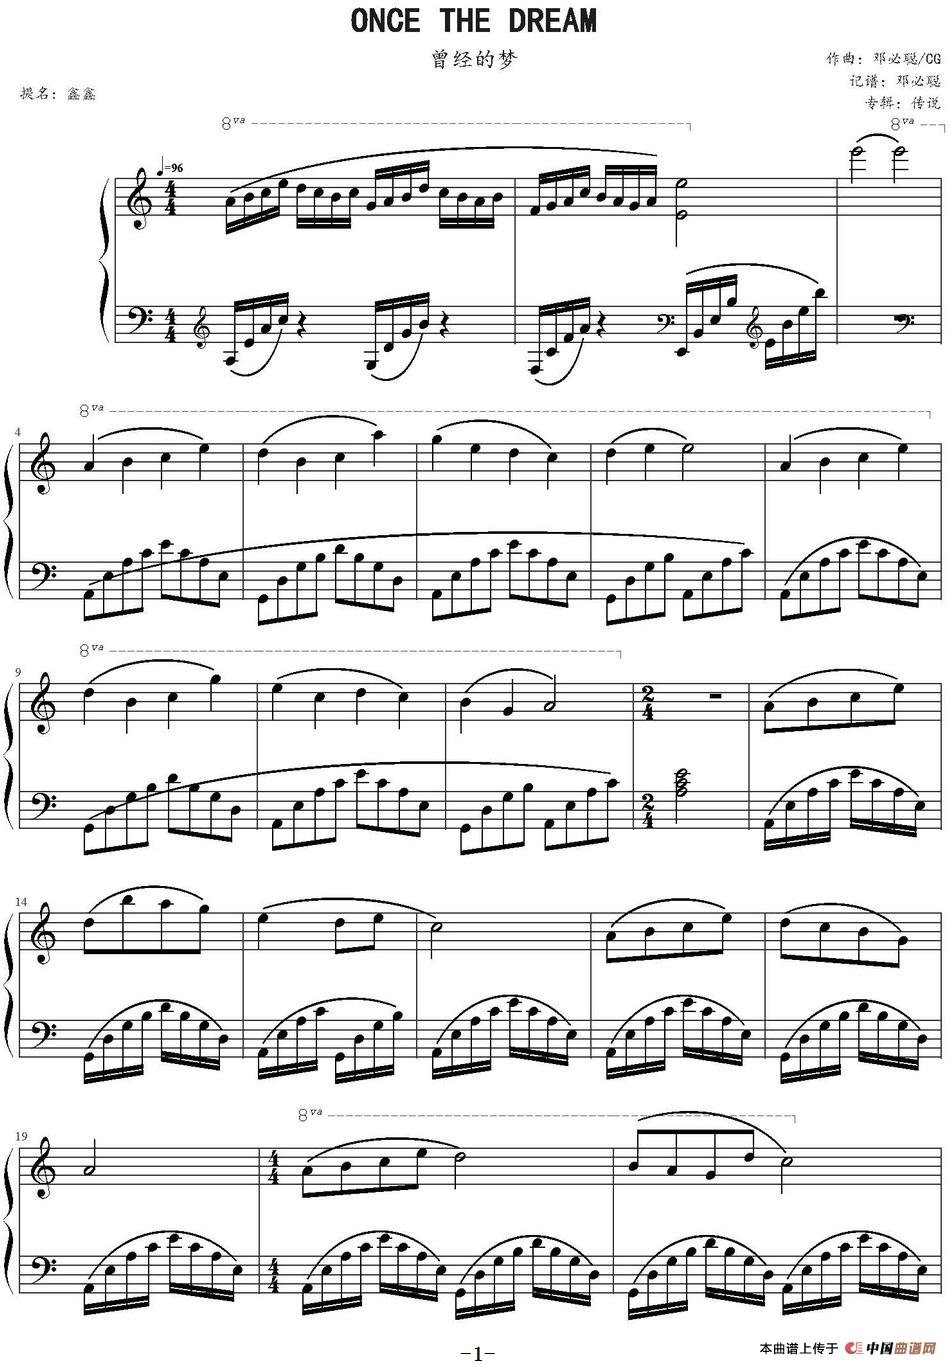 《曾经的梦》钢琴曲谱图分享